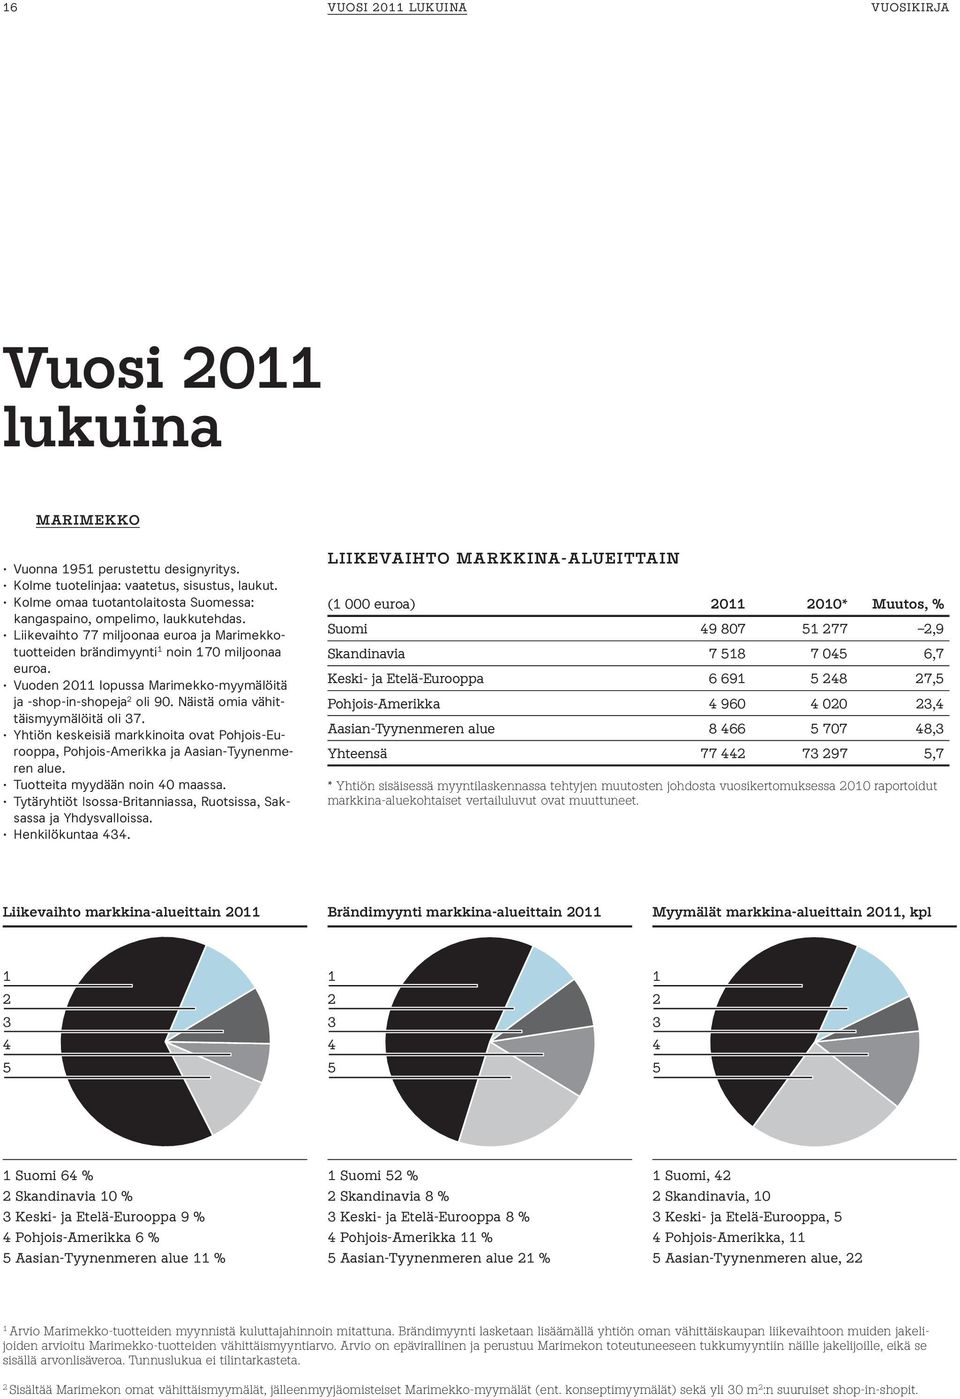 Vuoden 2011 lopussa Marimekko-myymälöitä ja -shop-in-shopeja 2 oli 90. Näistä omia vähittäismyymälöitä oli 37.